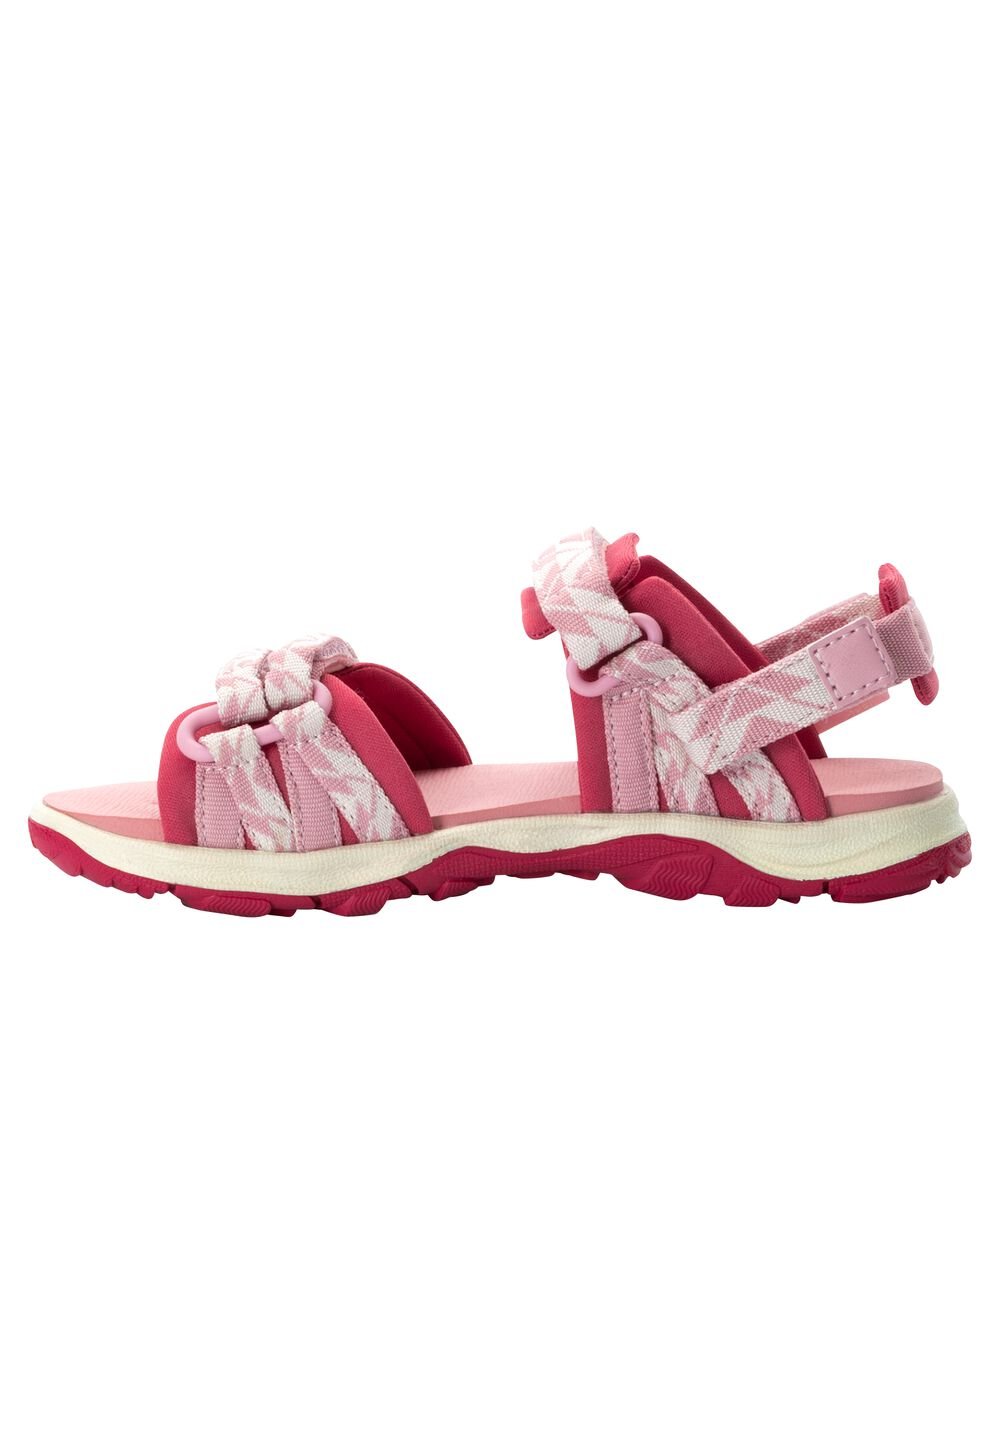 Jack Wolfskin 2 IN 1 Sandal Kids Kinderen sandalen 26 soft pink soft pink